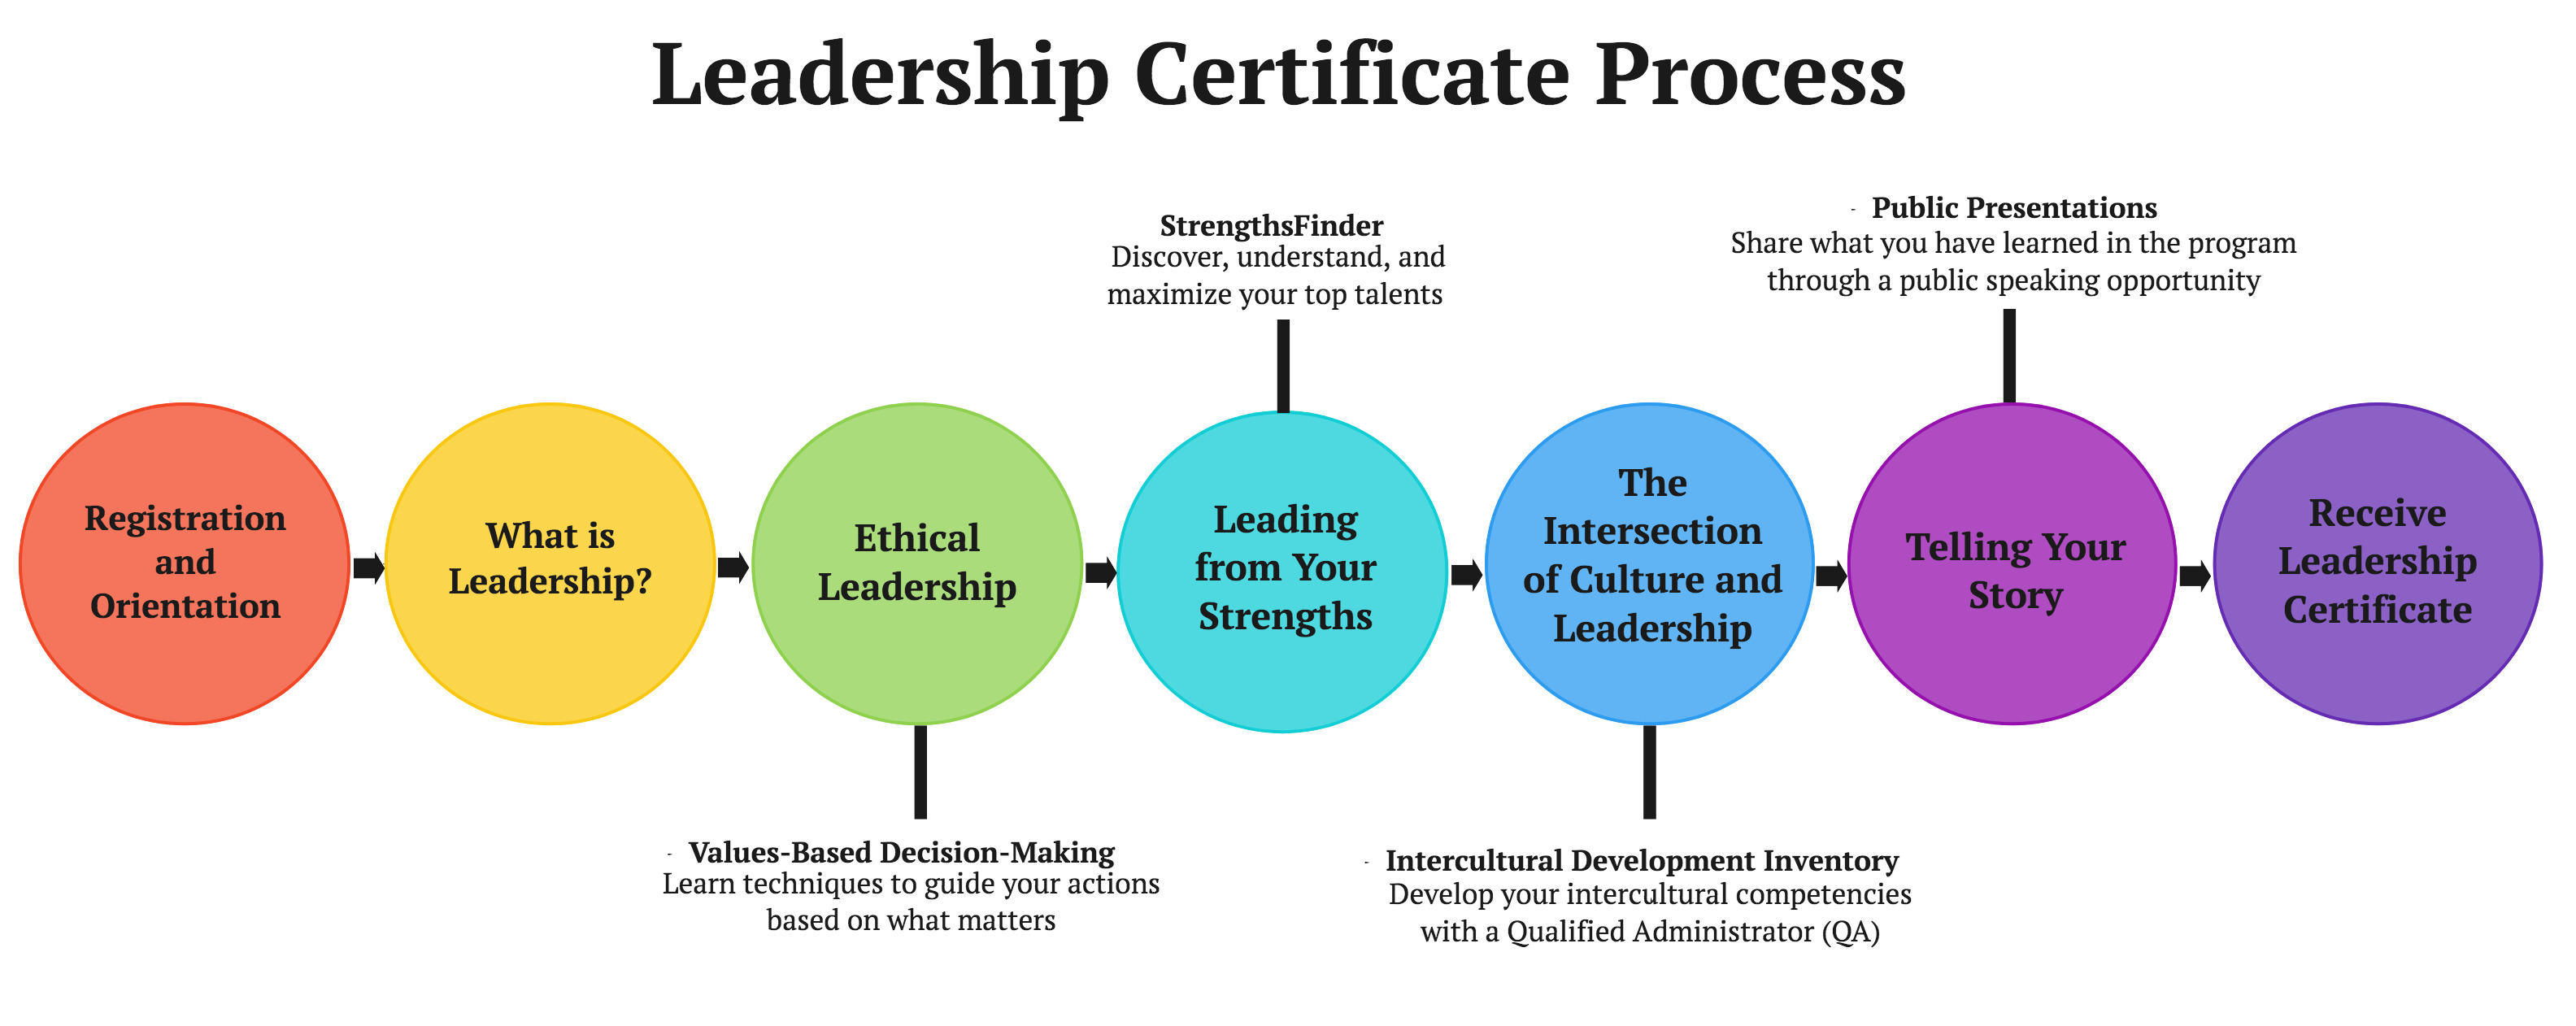 Leadership Certificate Process Diagram